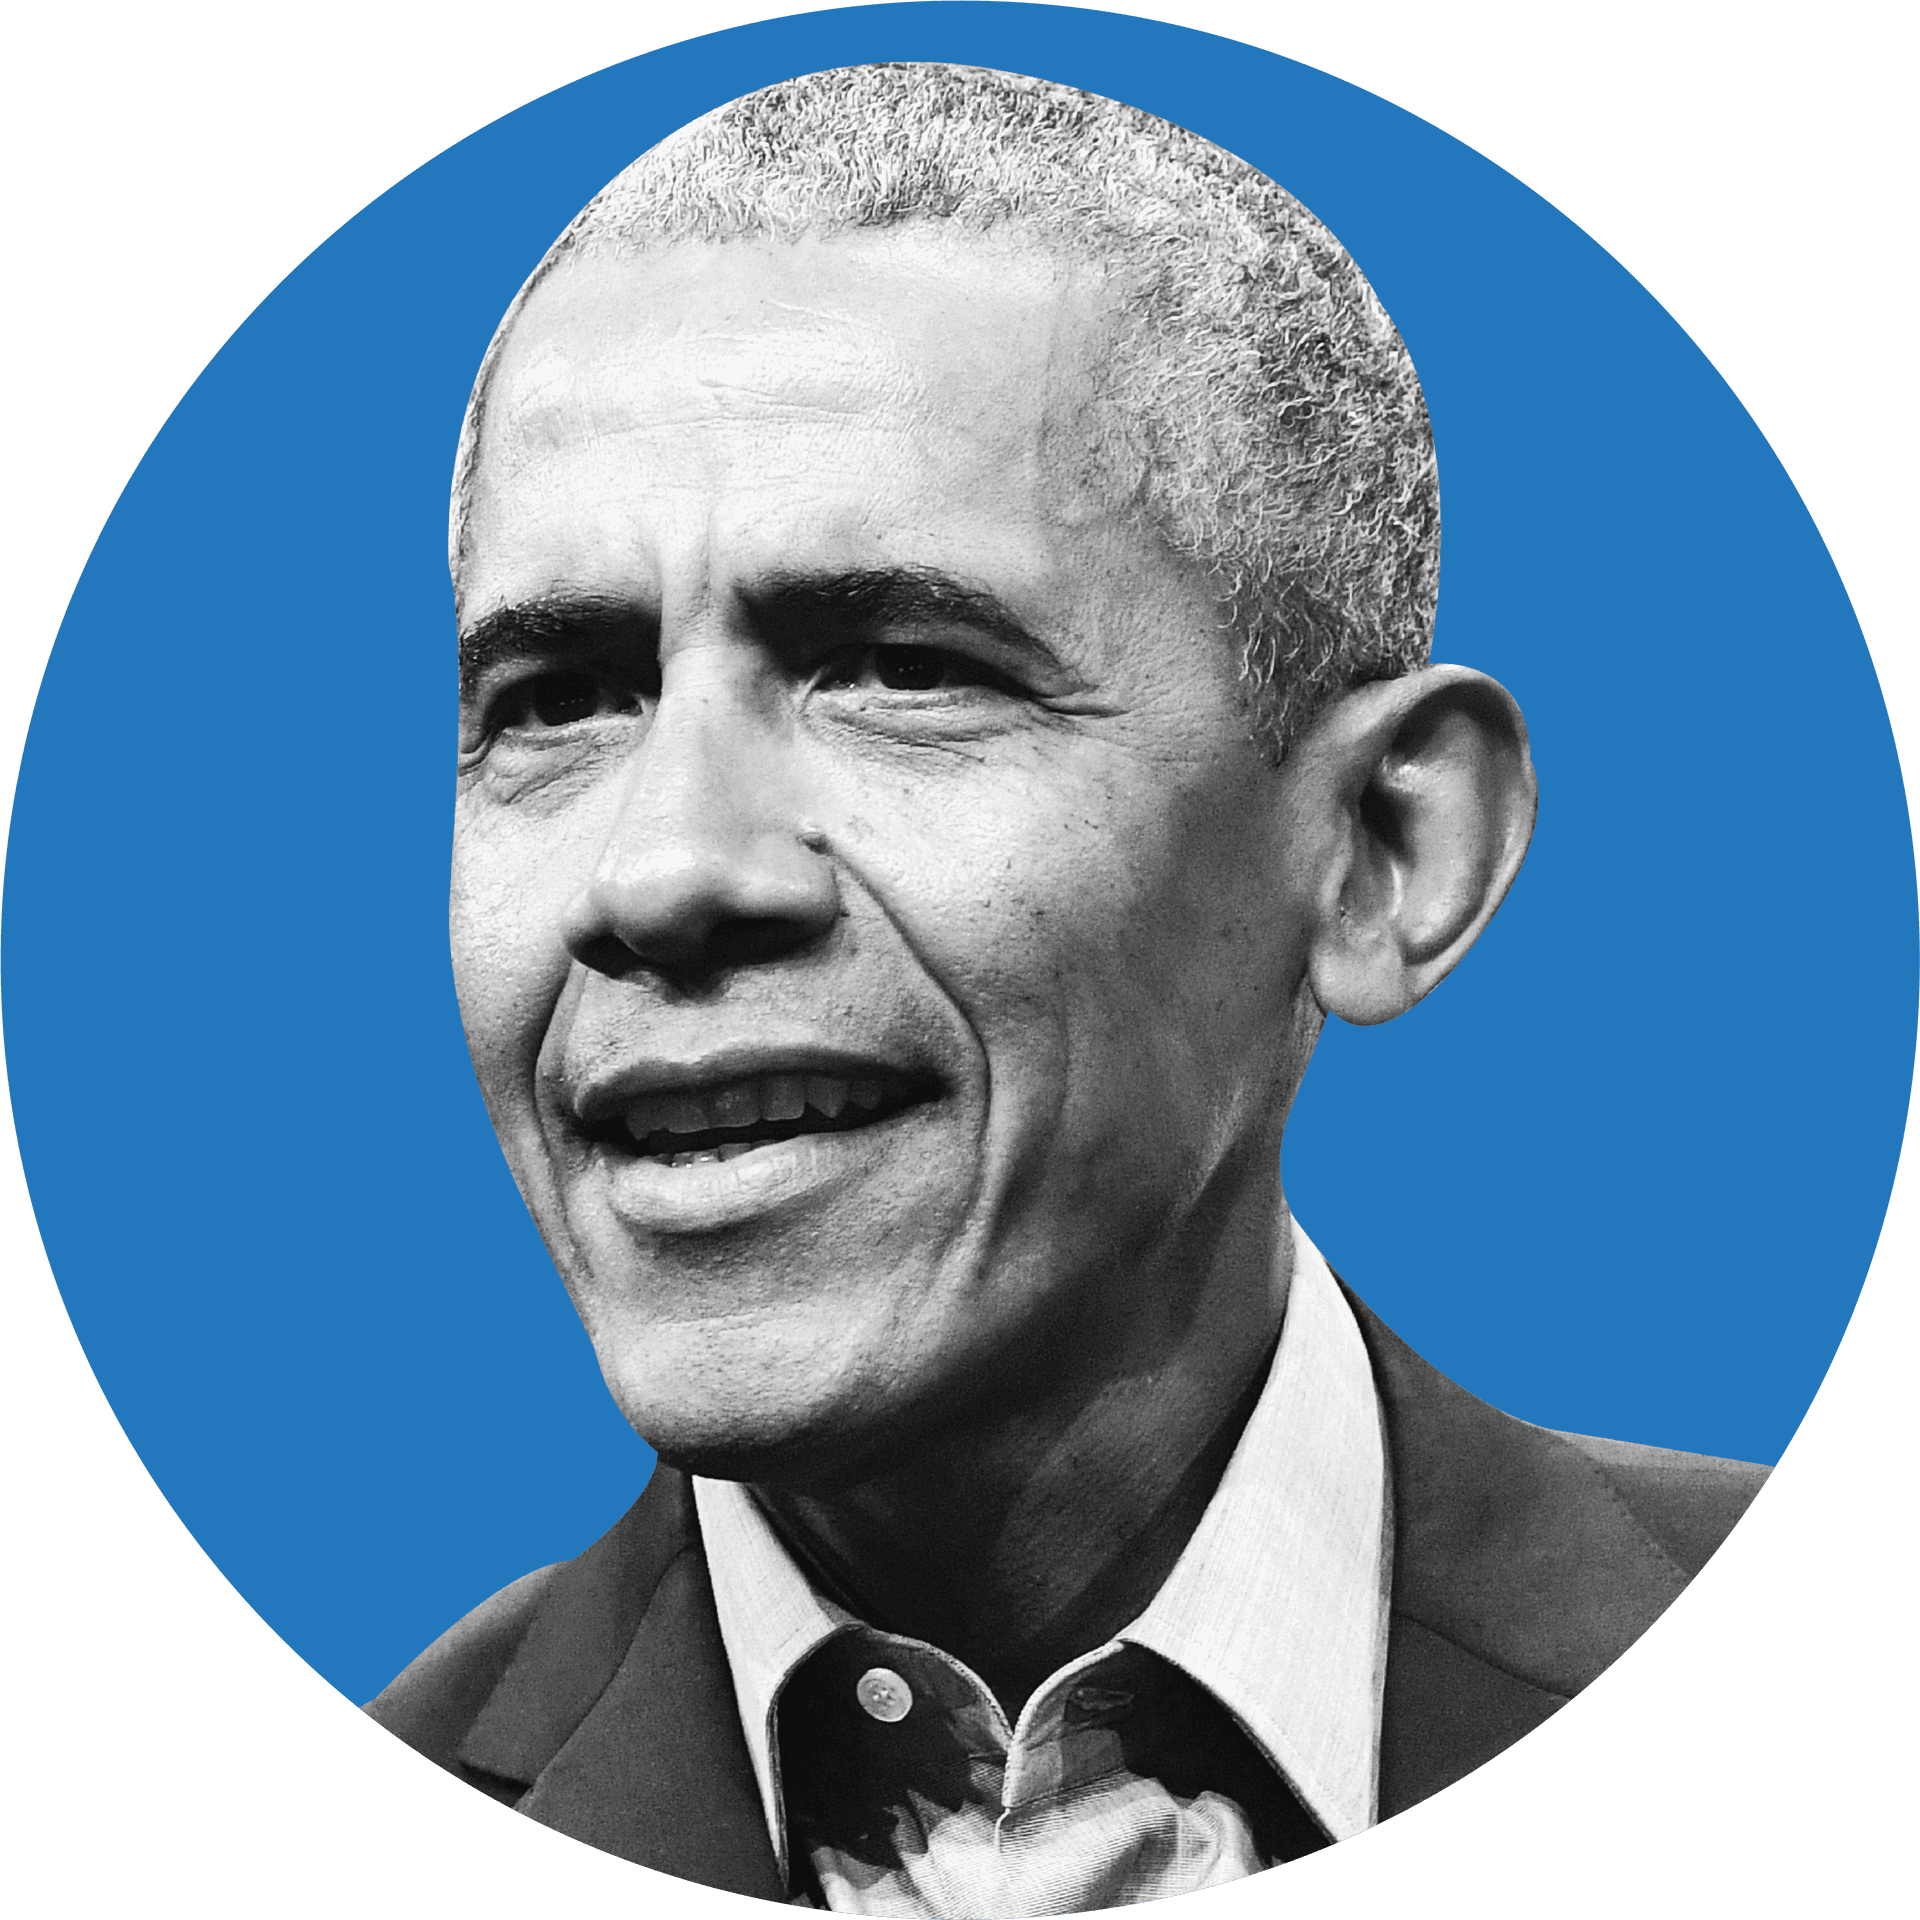 Barack Obama Portrait Blue Background PNG image